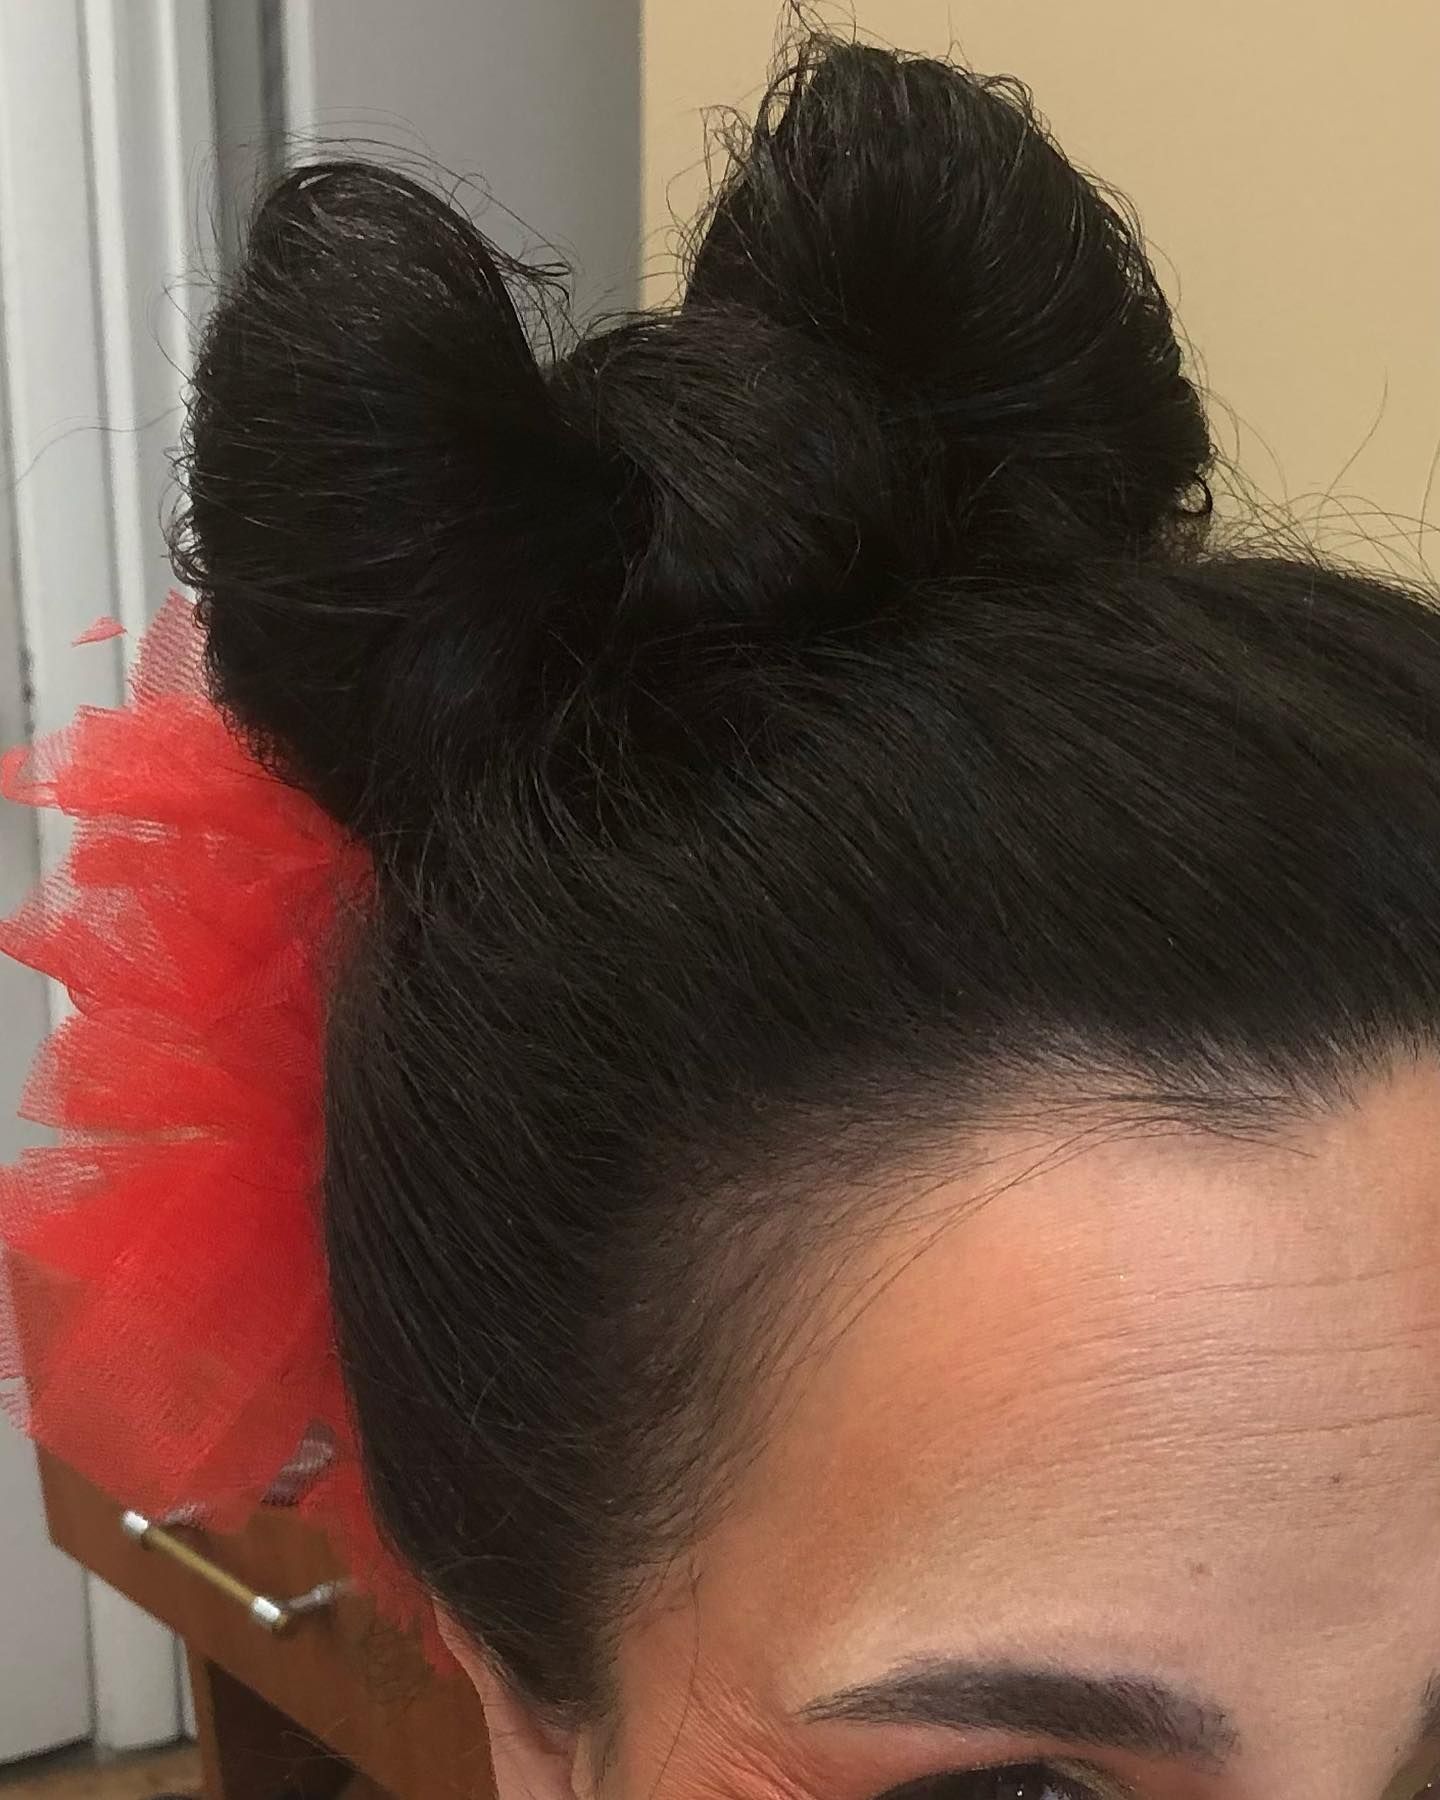 a close up of a woman 's hair with a red bow in it